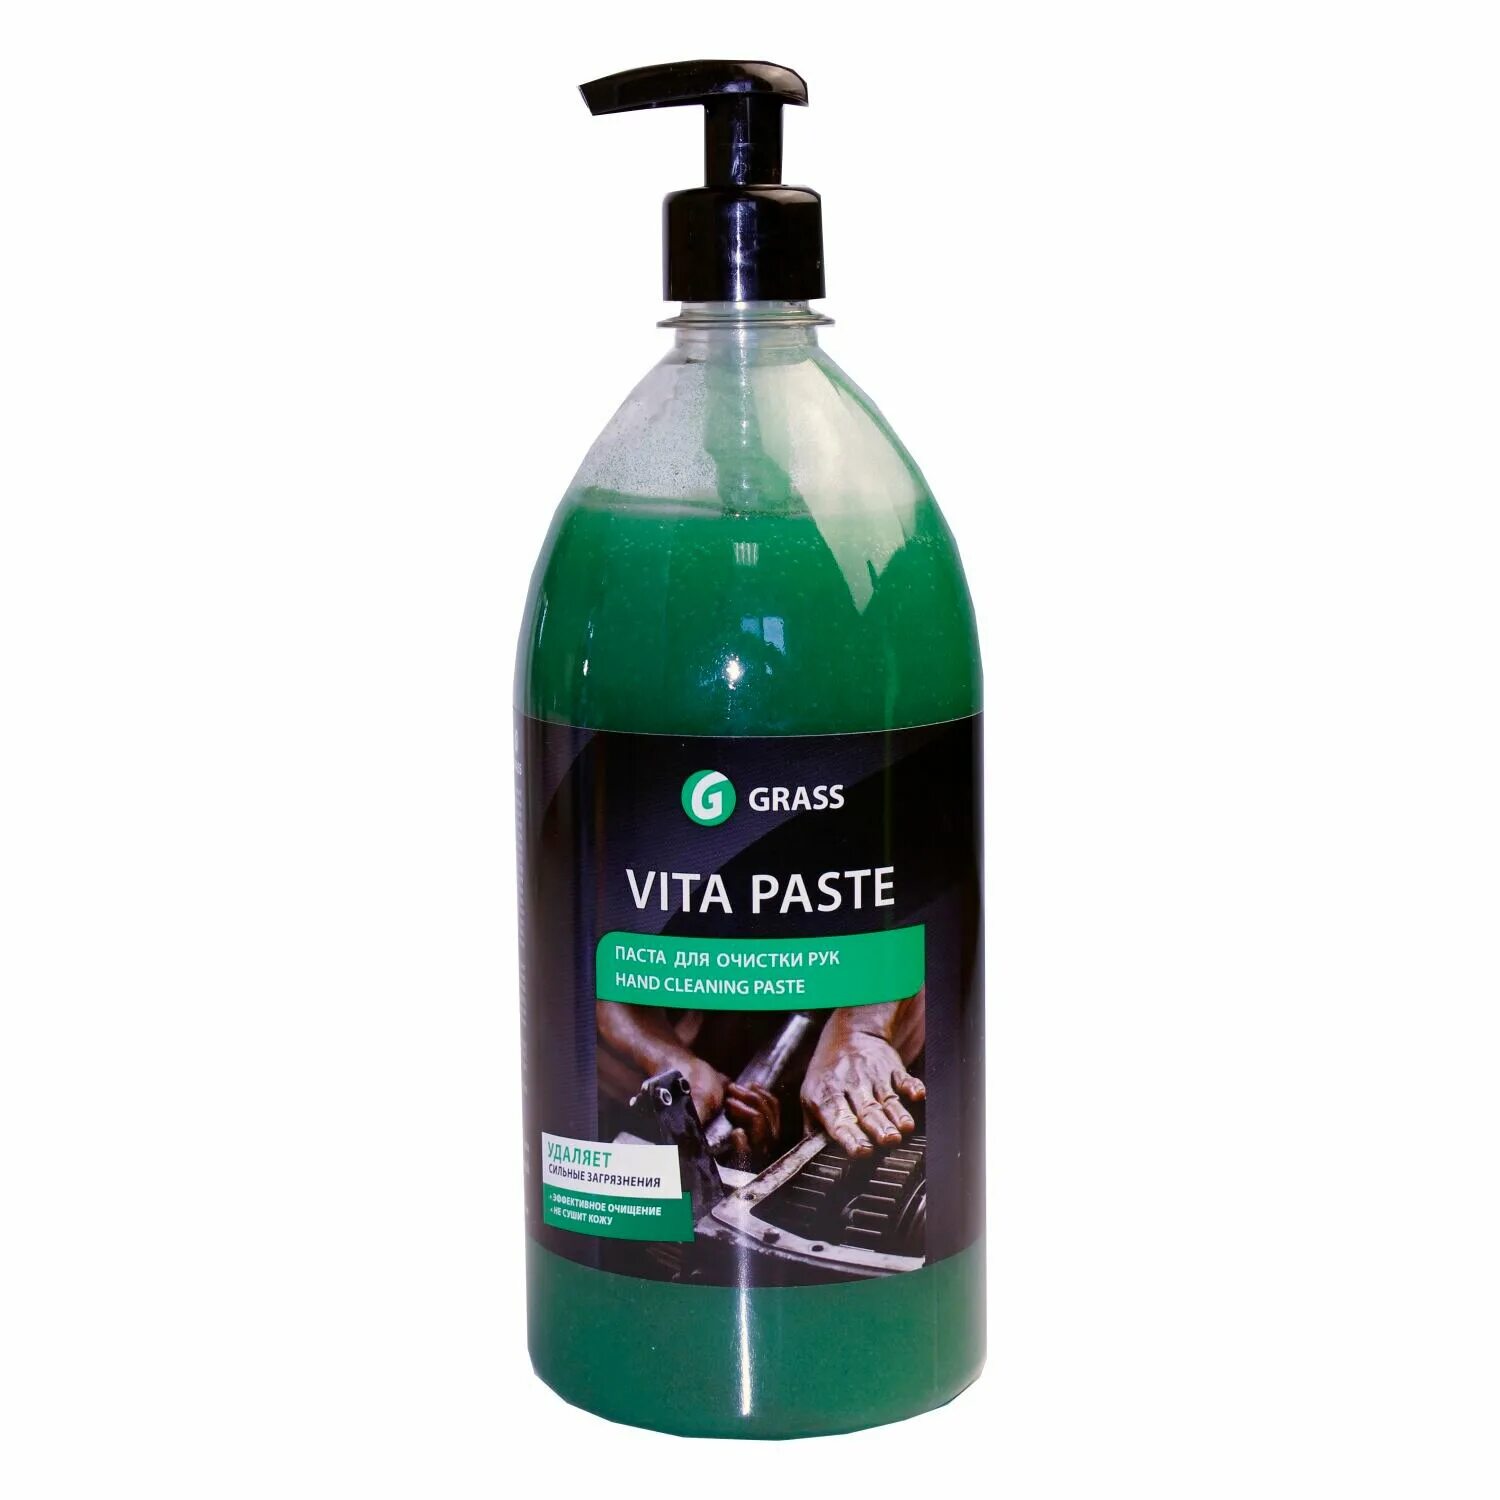 Паста 1 купить. Vita paste grass 211701. 110368 Grass. Паста очиститель для рук Sprint pasta lavamani 4л. С абразивом. Grass для очистки рук Vita paste,.